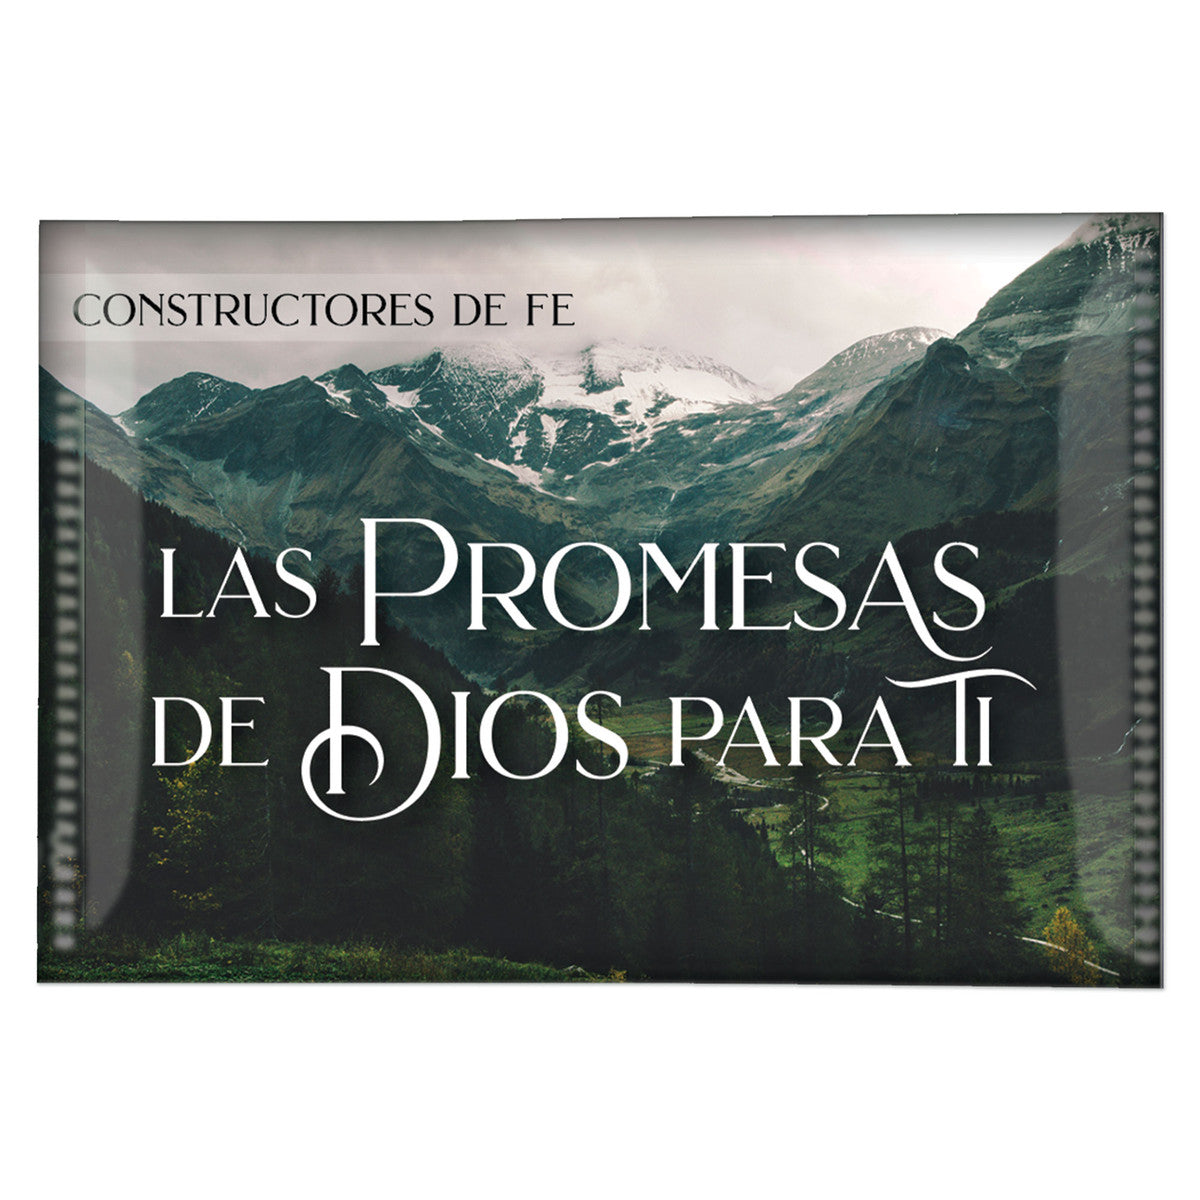 Conjunto Las promesas de Dios para ti Constructores de Fe